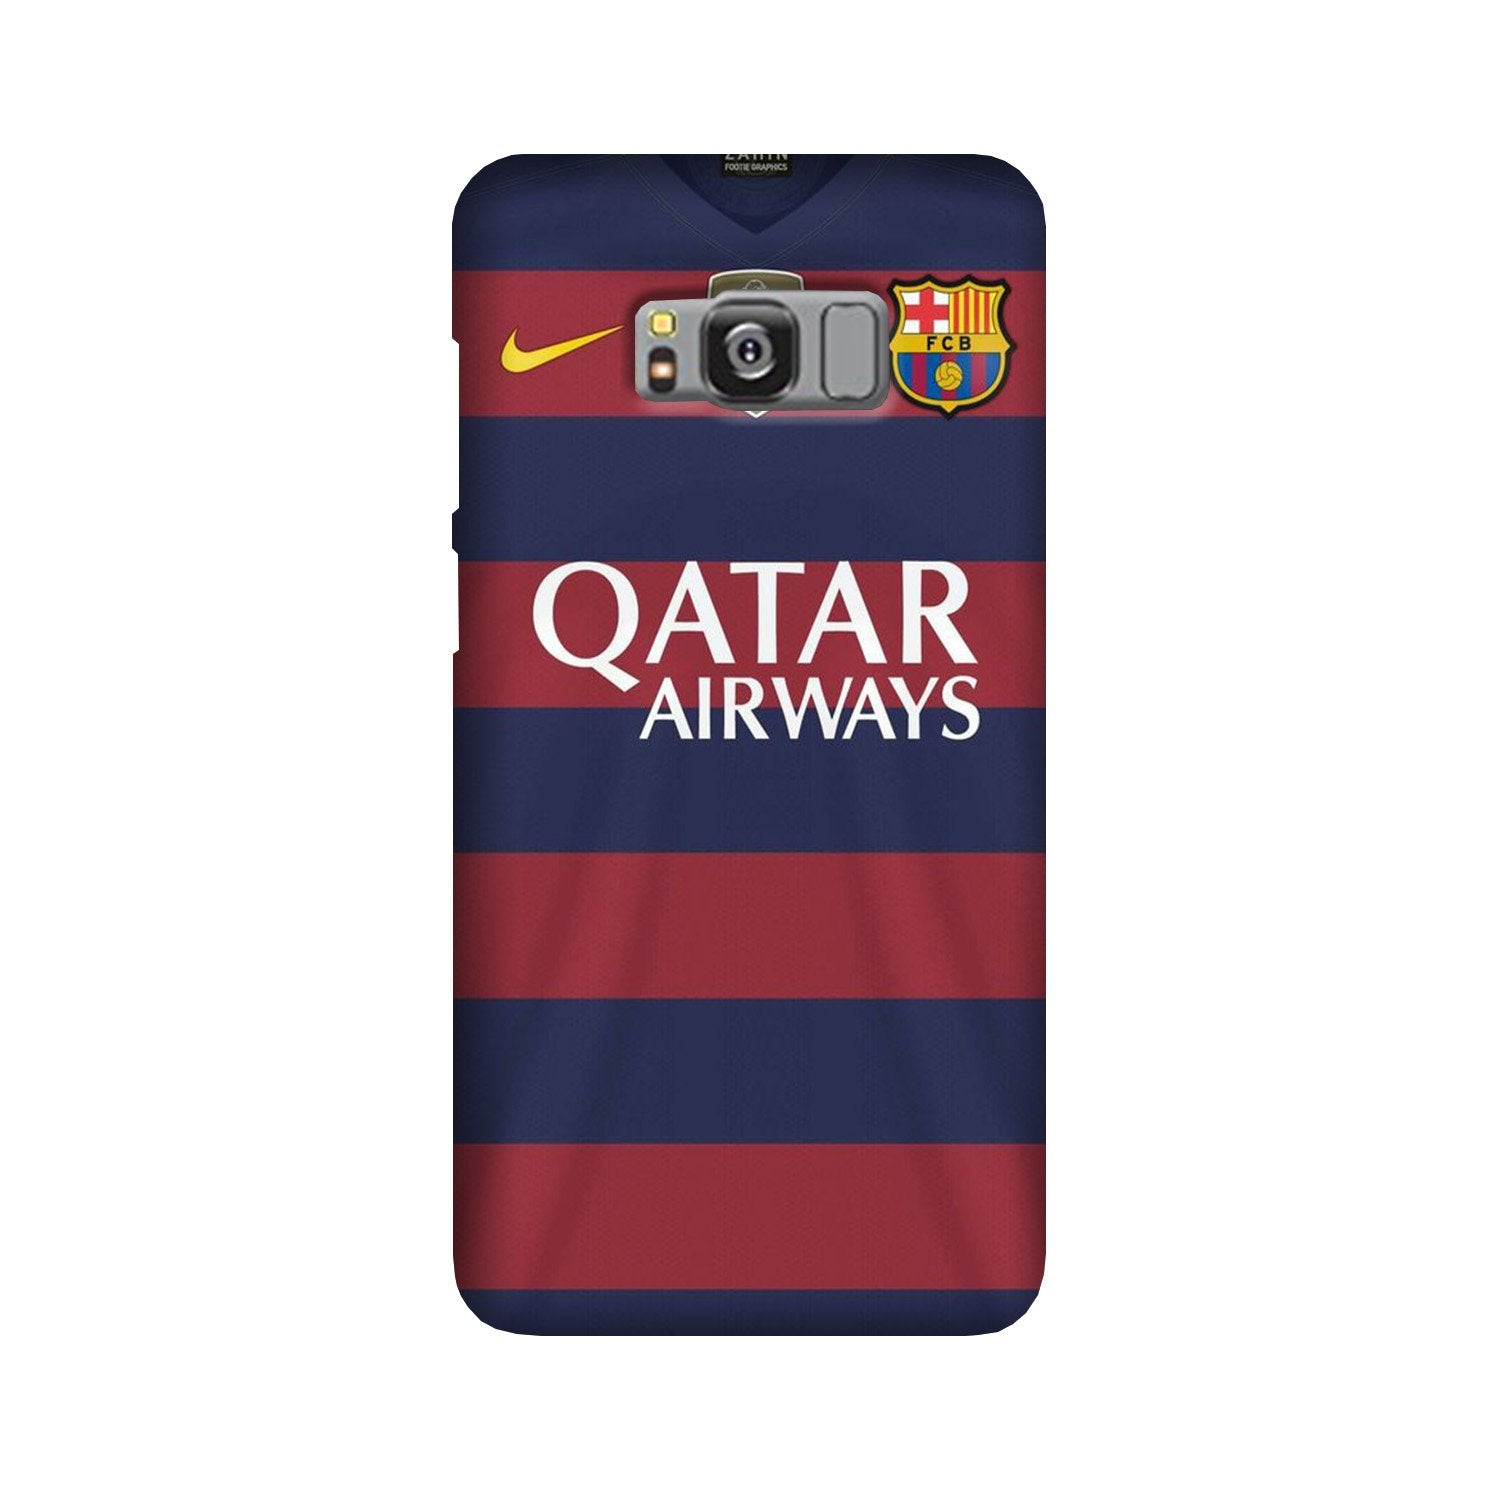 Qatar Airways Case for Galaxy S8(Design - 160)